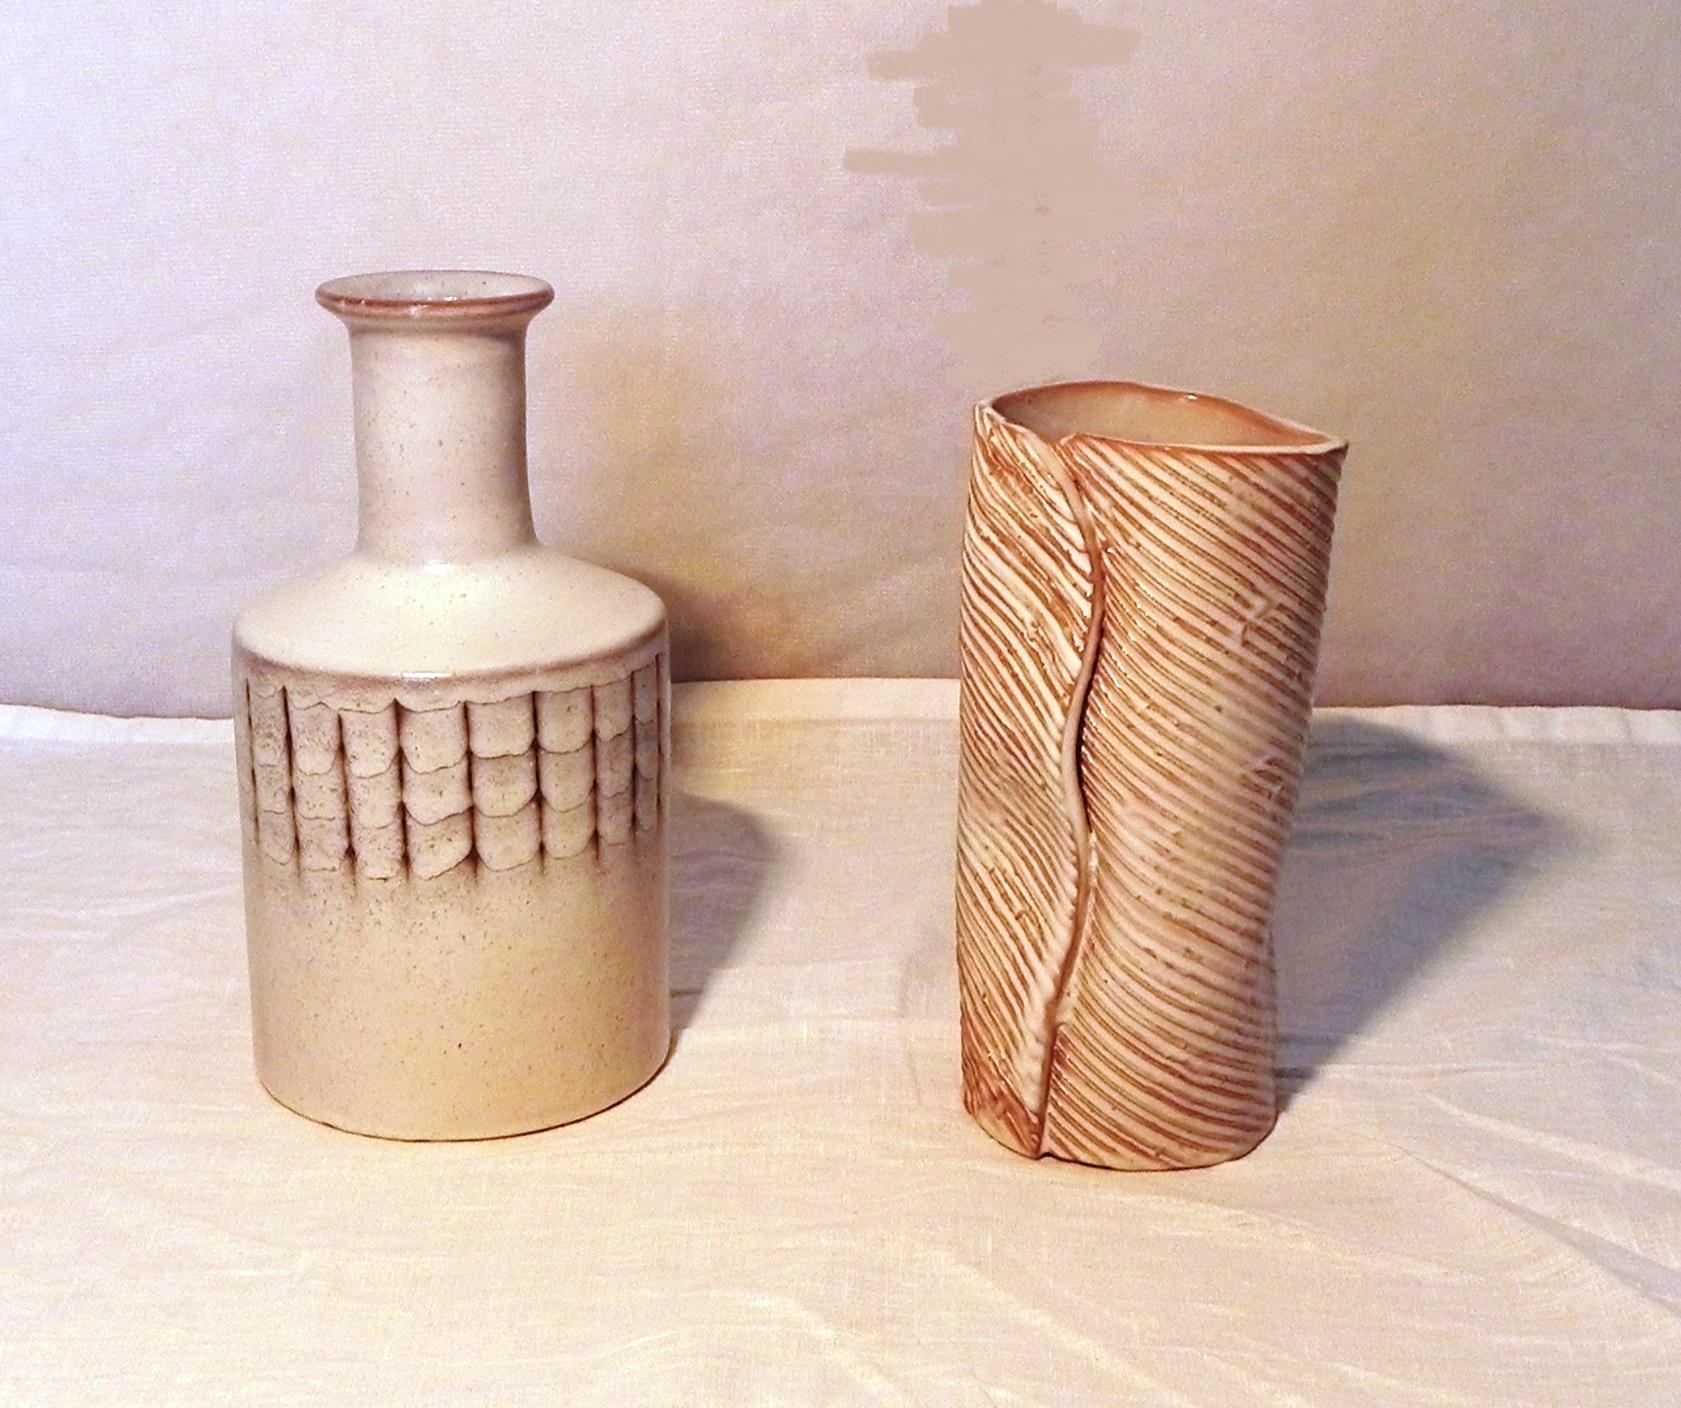 paar Keramik signiert Menozzi, 1970er Jahre. 1 glasierte Keramikflasche h 25 cm. diam 13 cm - 1 glasierte Keramik Blumenvase h 22 cm. diam 10 cm beide in perfektem Erhaltungszustand. Signatur unter dem Sockel.